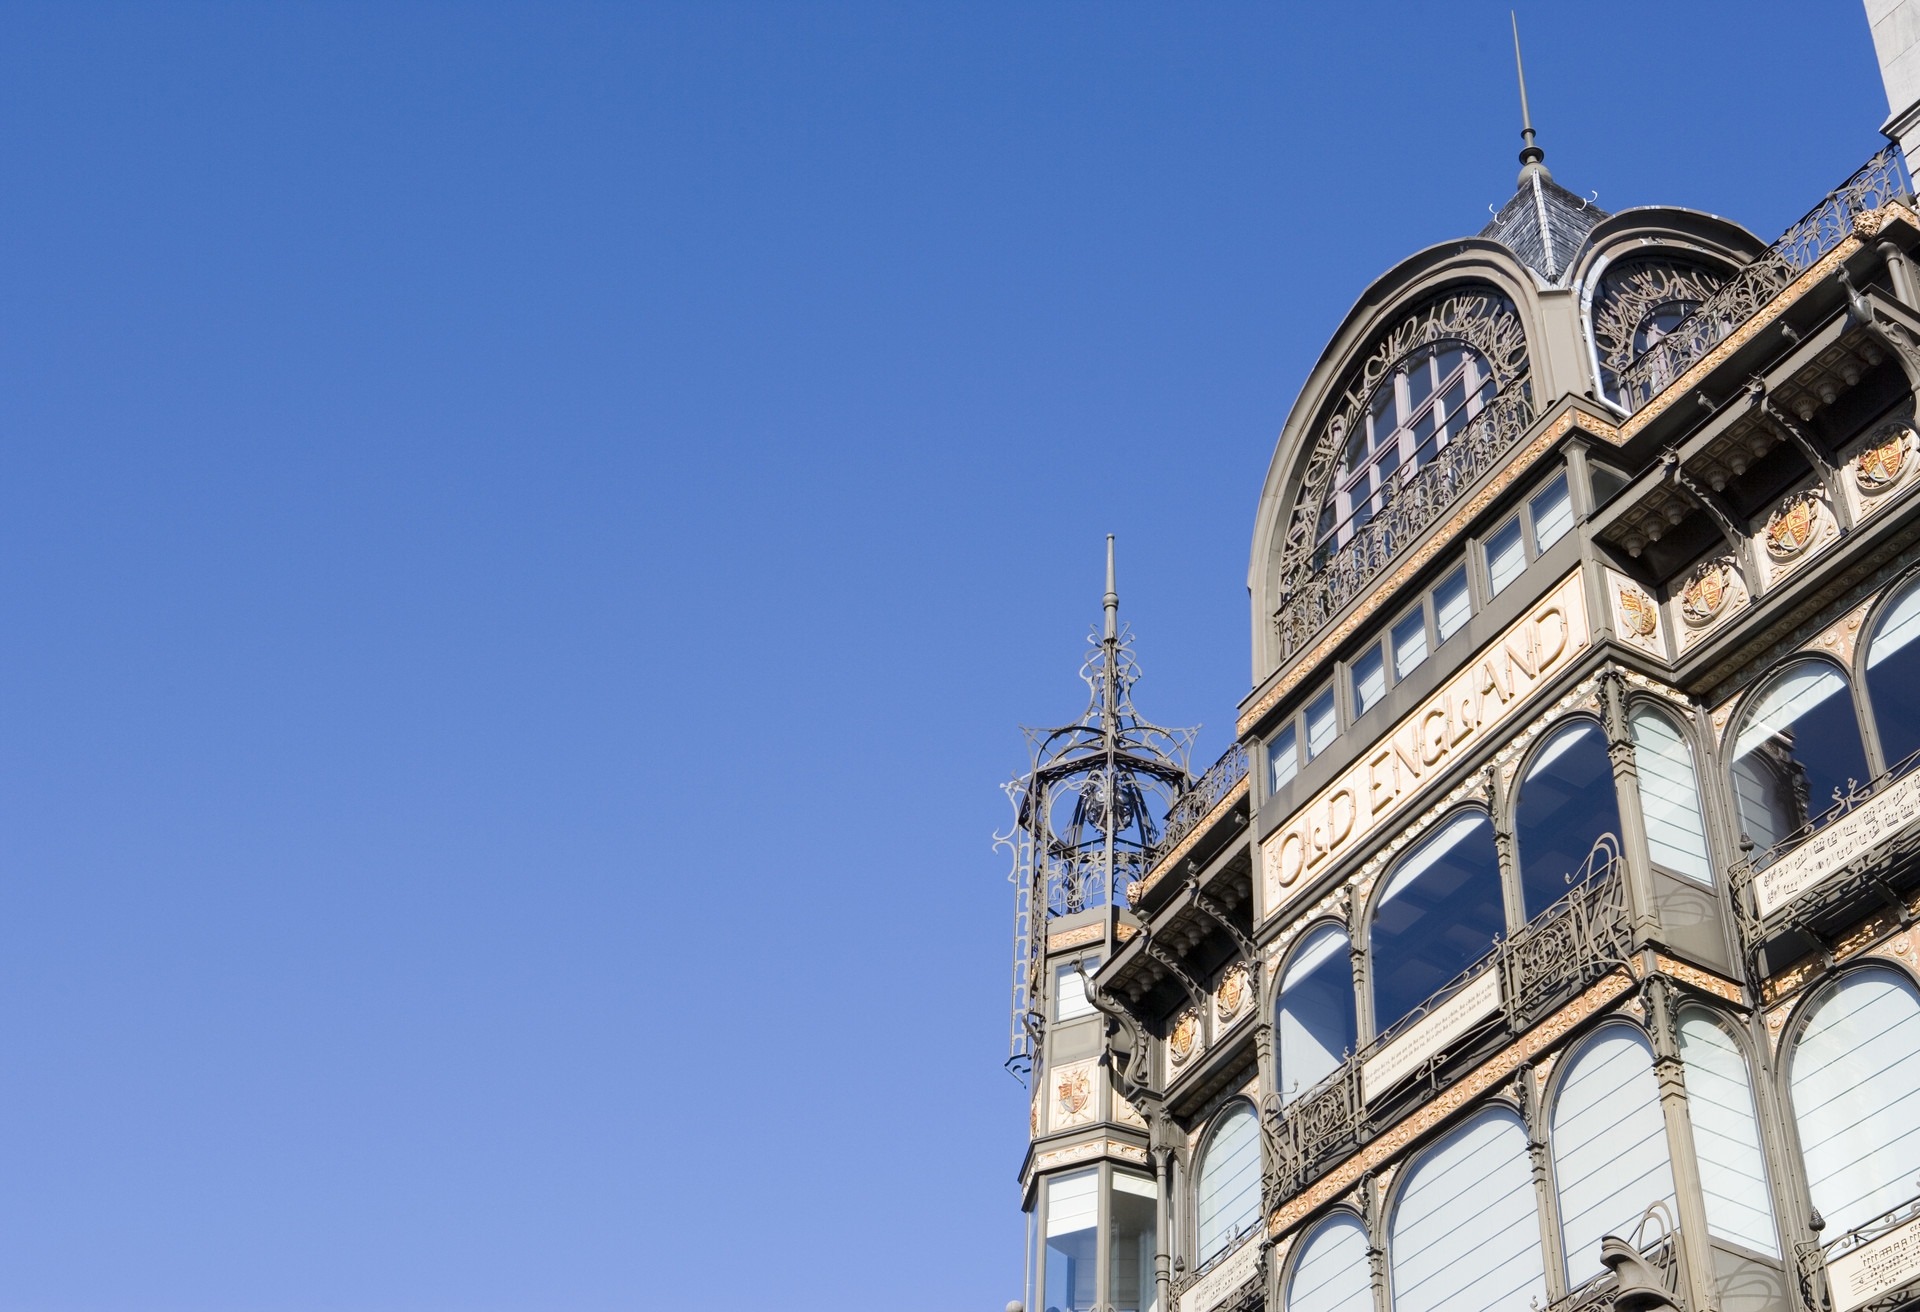 Het Old England-warenhuis is een art nouveau-gebouw dat in Brussel staat